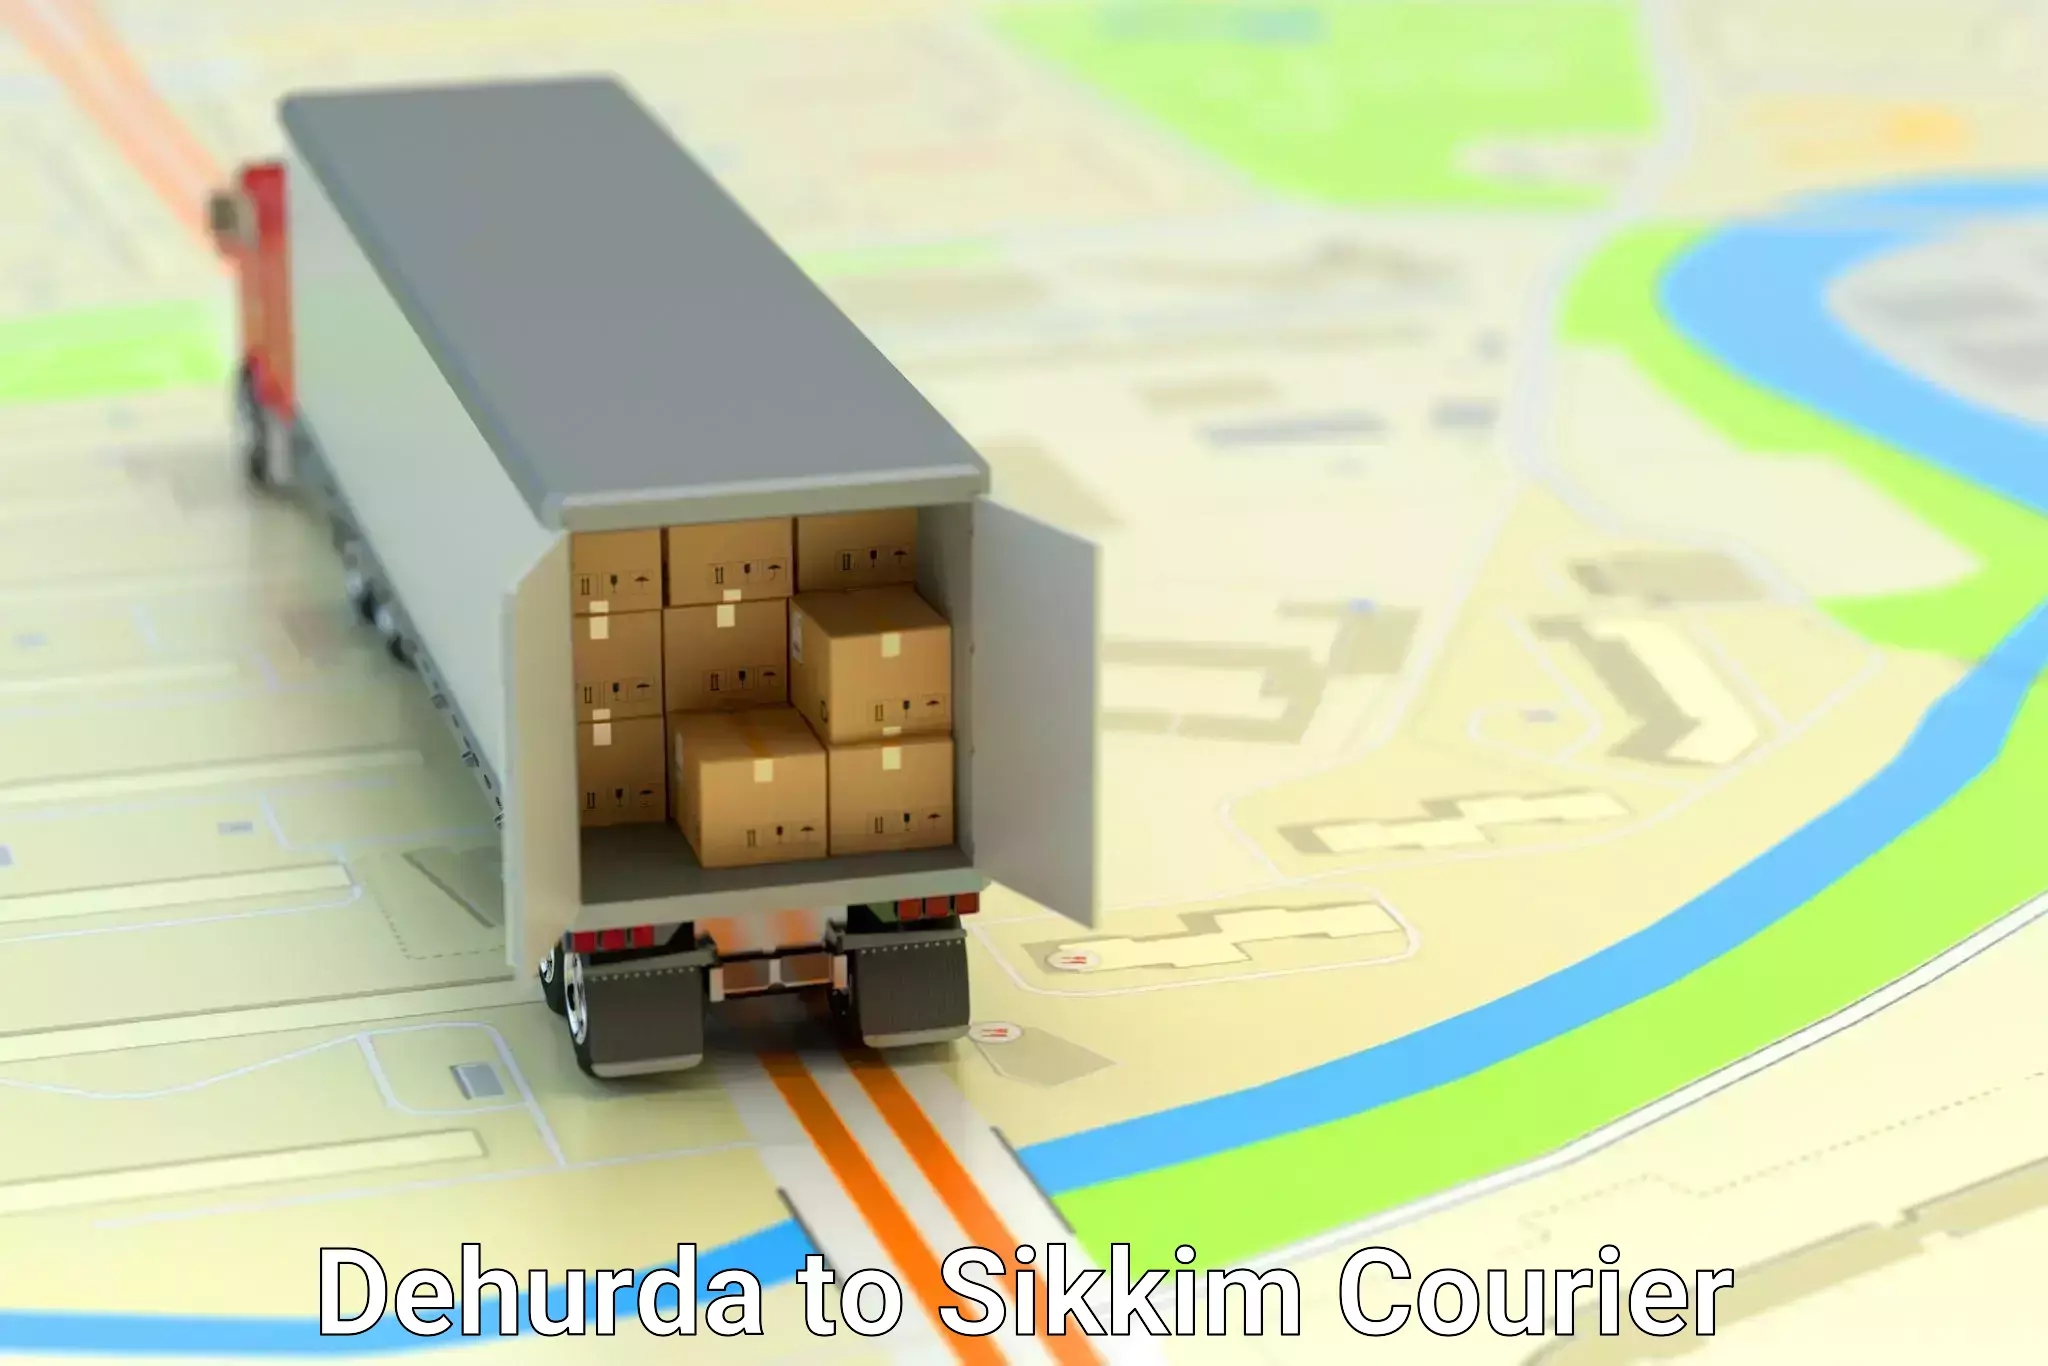 Urban courier service Dehurda to North Sikkim